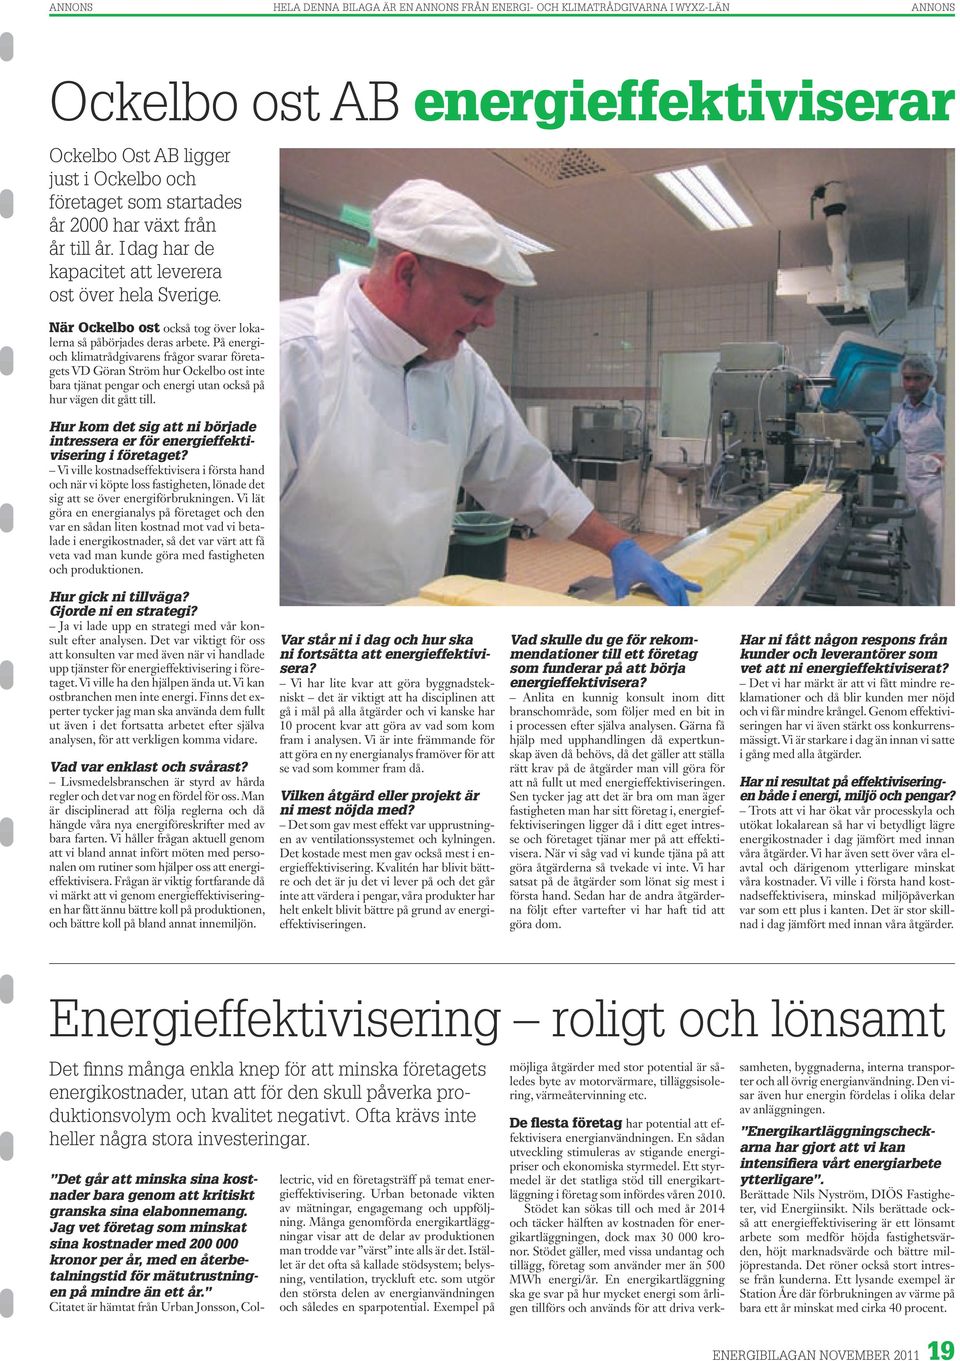 På energioch klimatrådgivarens frågor svarar företagets VD Göran Ström hur Ockelbo ost inte bara tjänat pengar och energi utan också på hur vägen dit gått till.